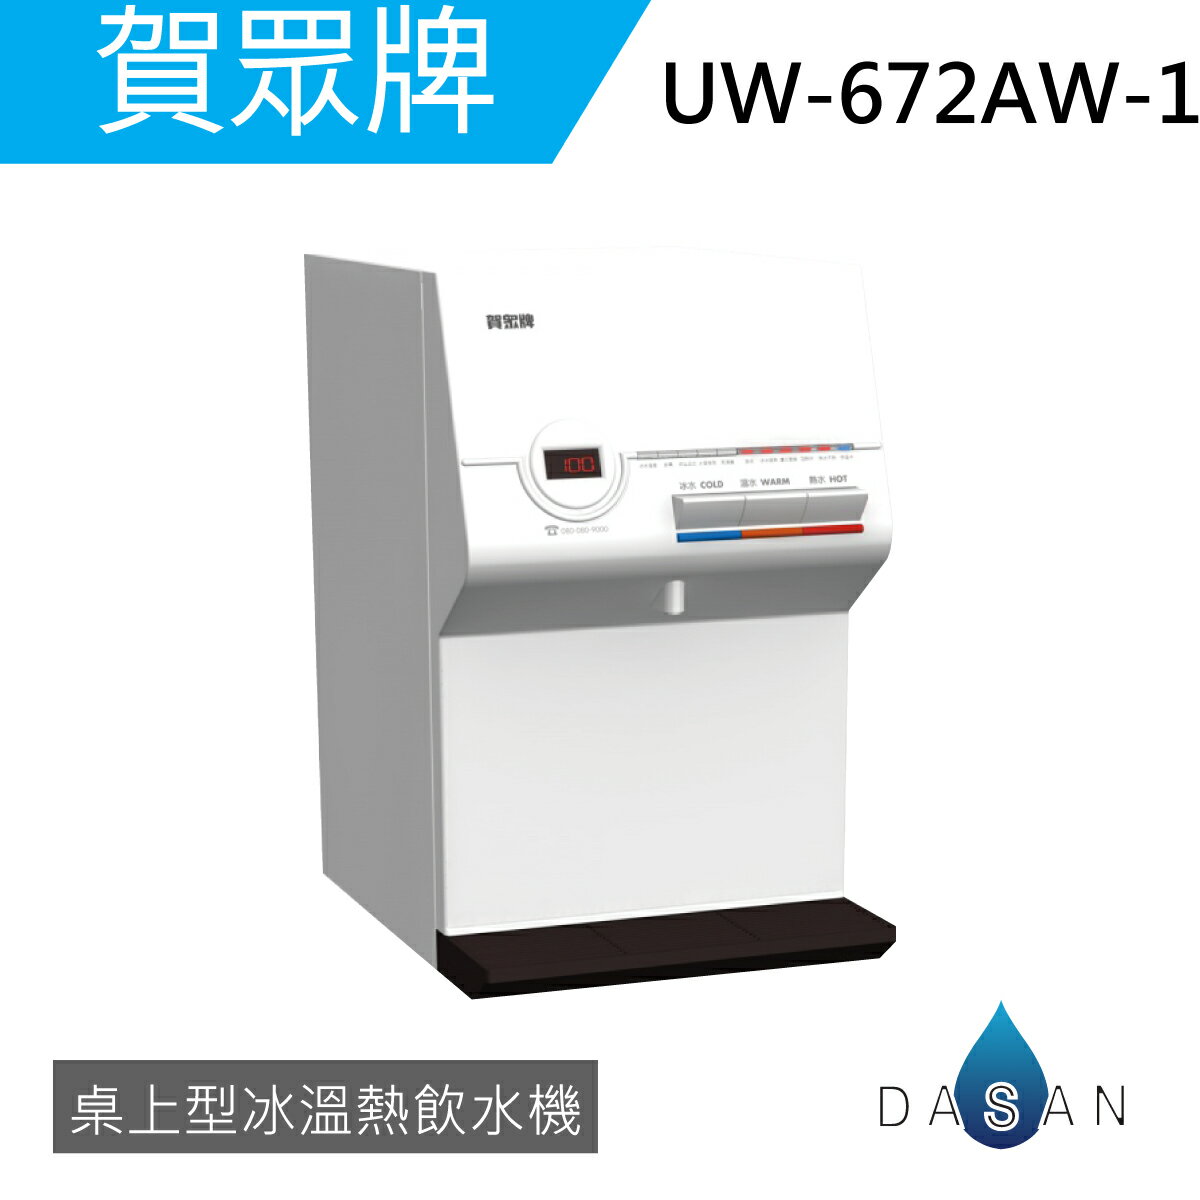 《贈超商禮卷》《專業安裝》 賀眾牌 UW-672AW-1 智能型微電腦 桌上型飲水機 [冰溫熱] 需另購淨水器